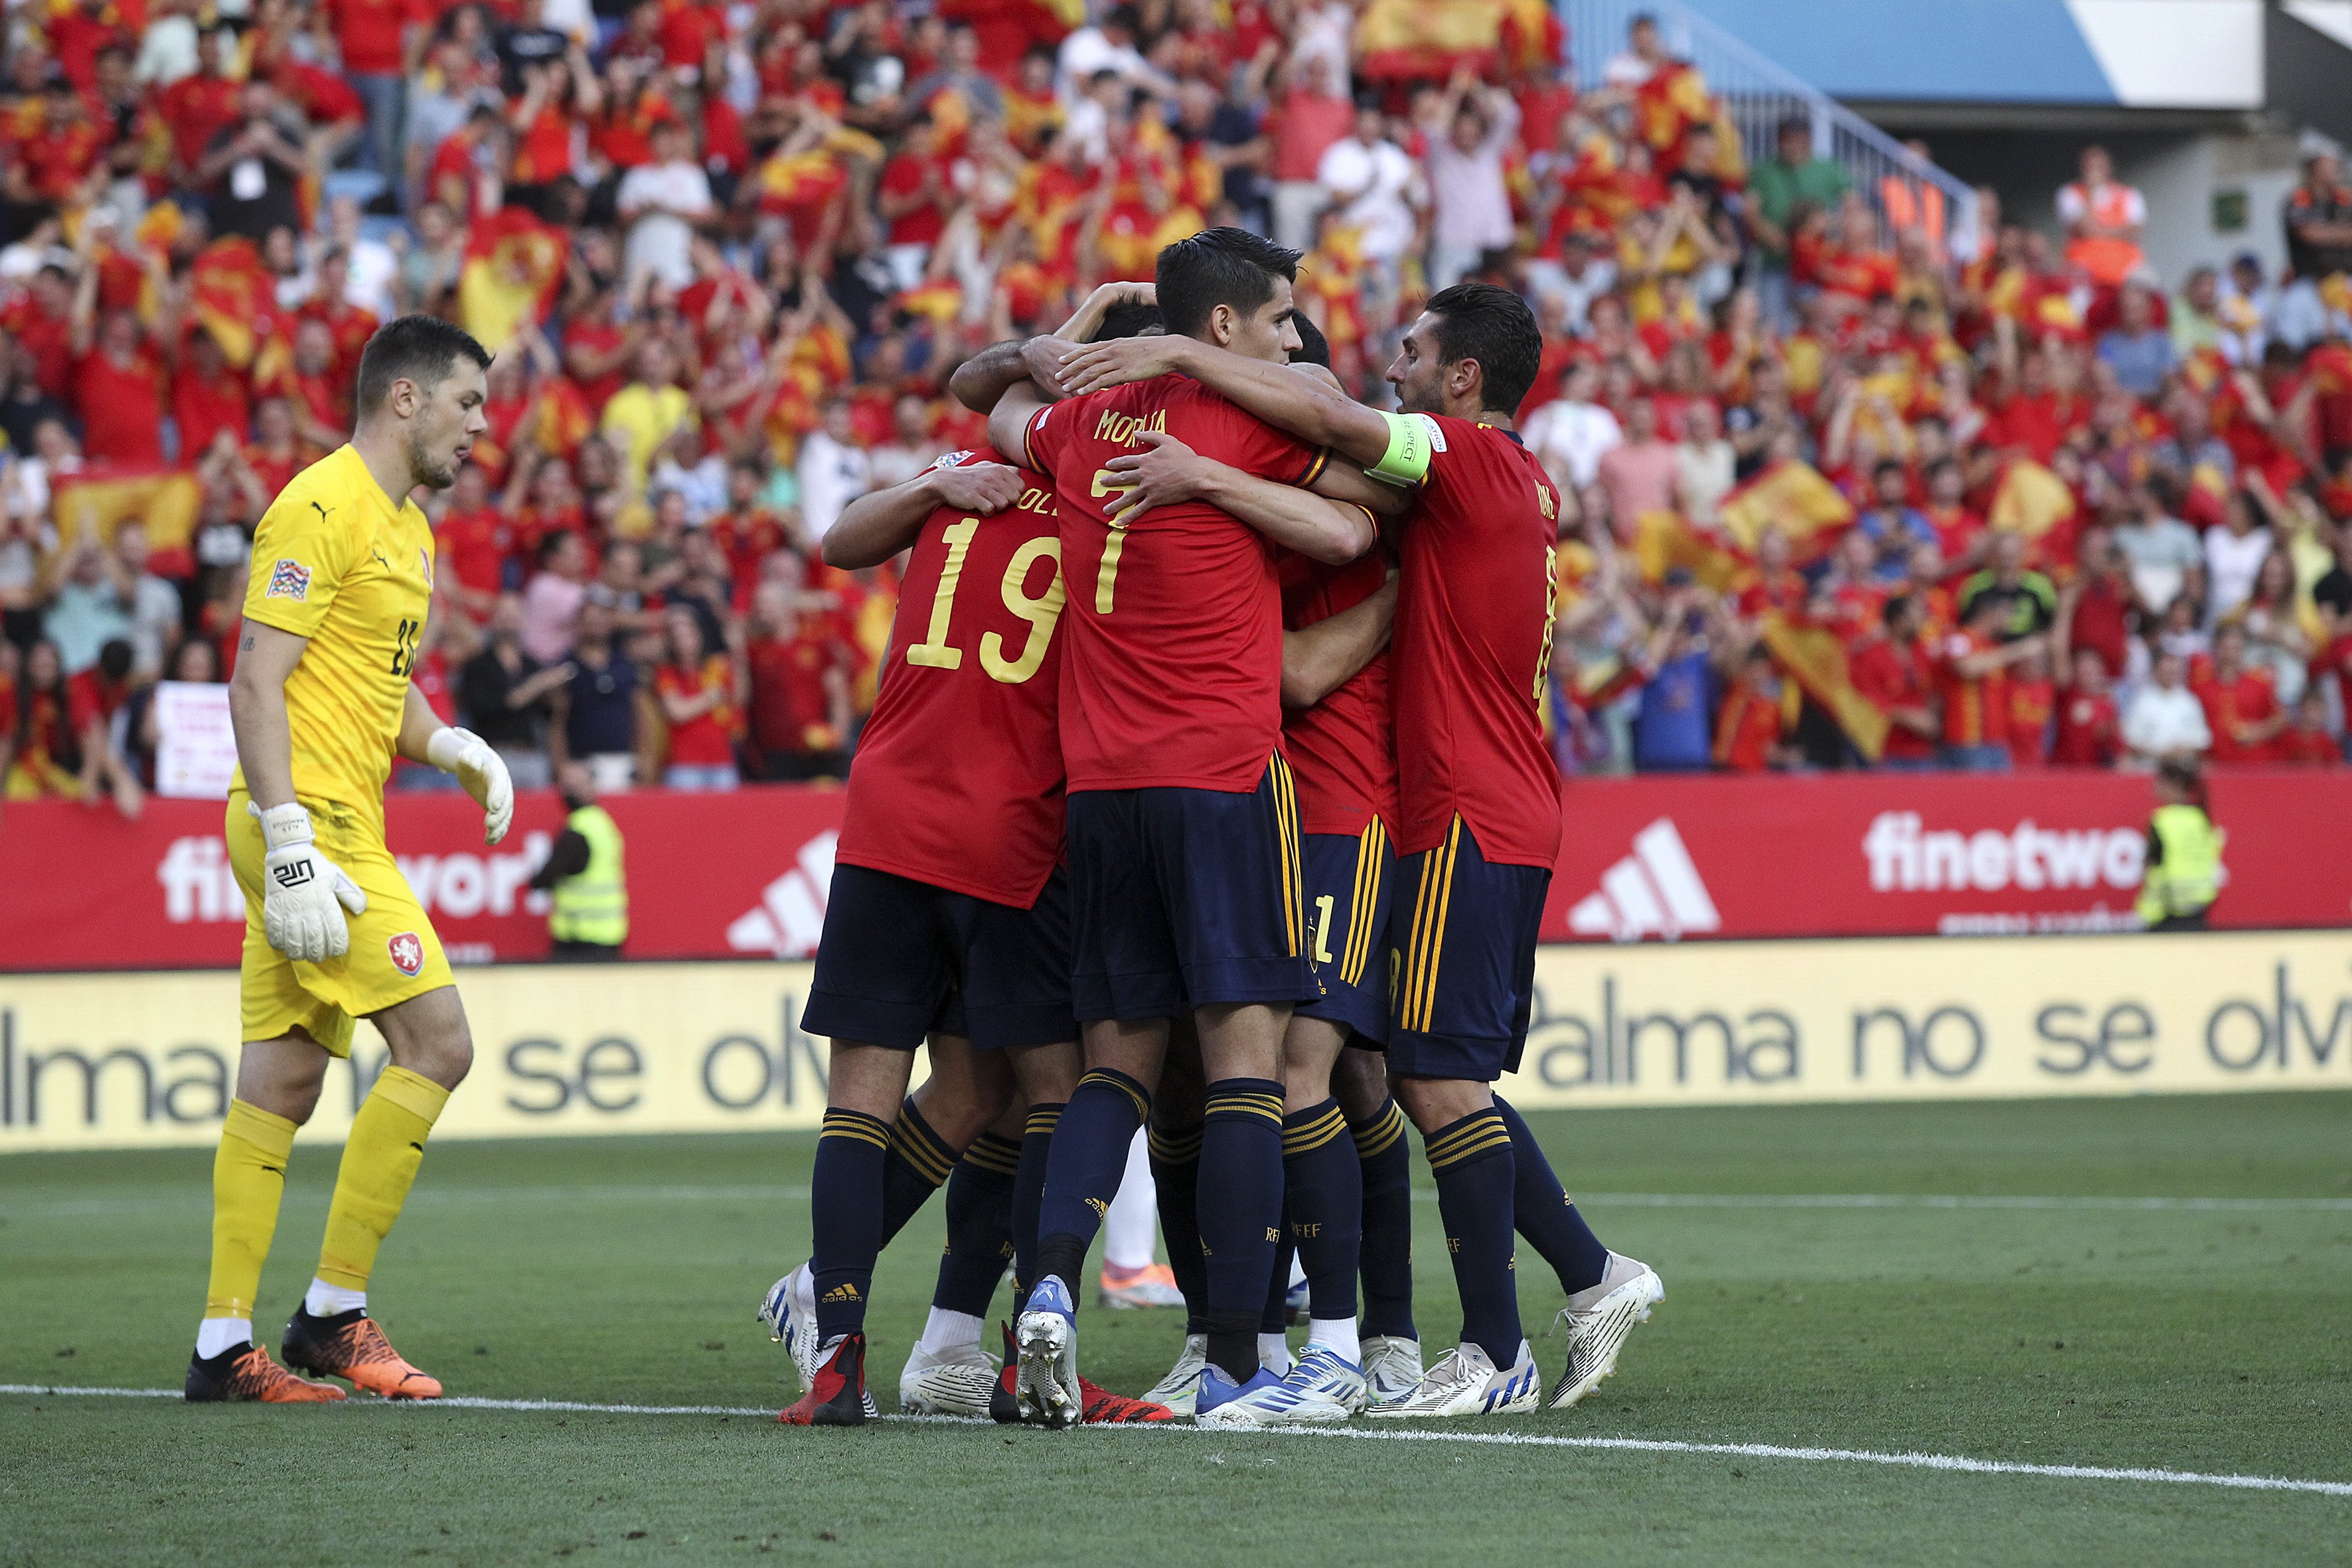 España vence a la República Checa (2-0) y se va de vacaciones líder de su grupo tras el pinchazo de Portugal